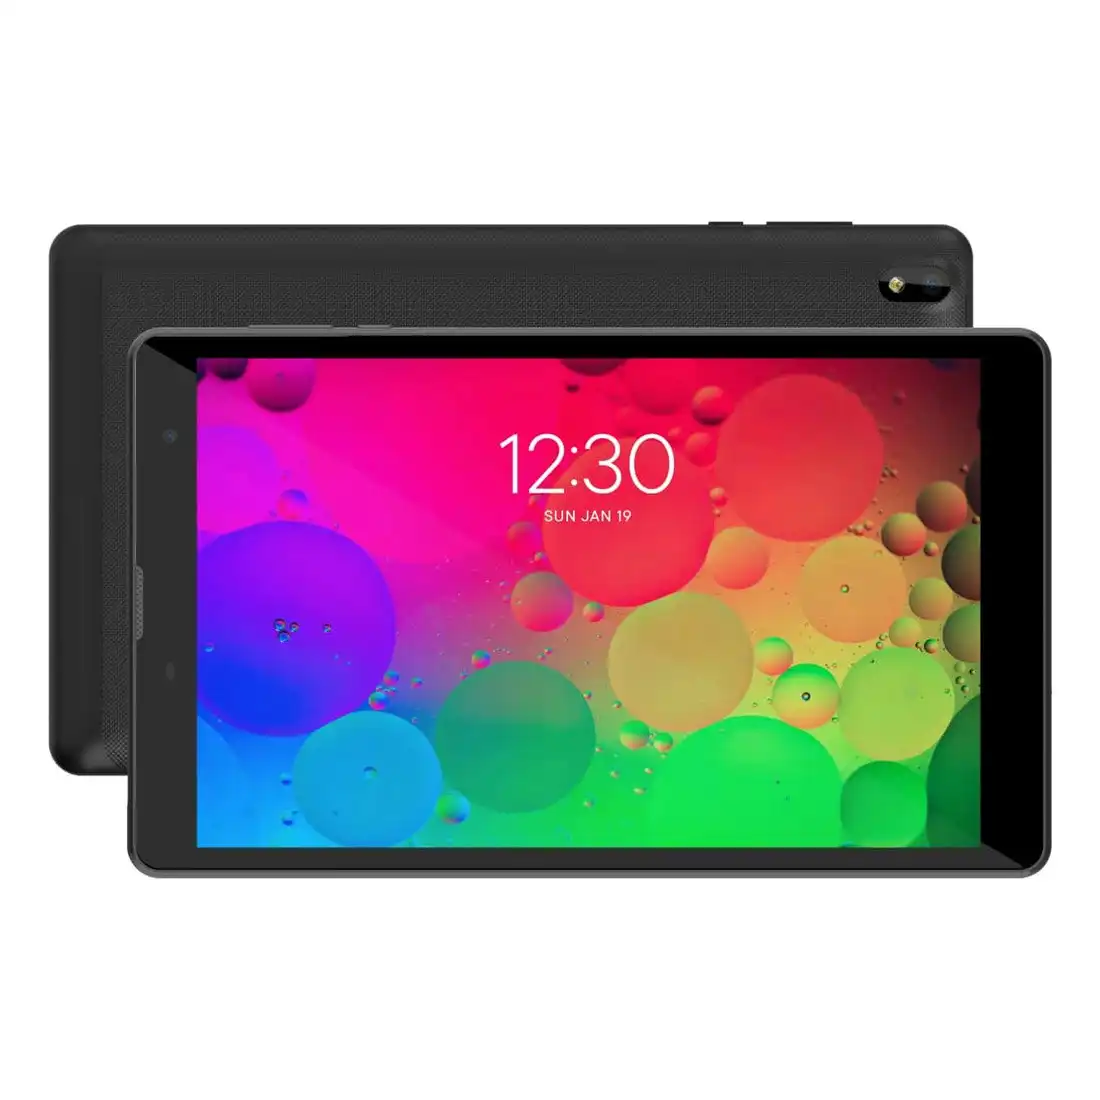 IQU T8 4G LTE Tablet (8'', 2GB/16GB) Black [Refurbished] - Good